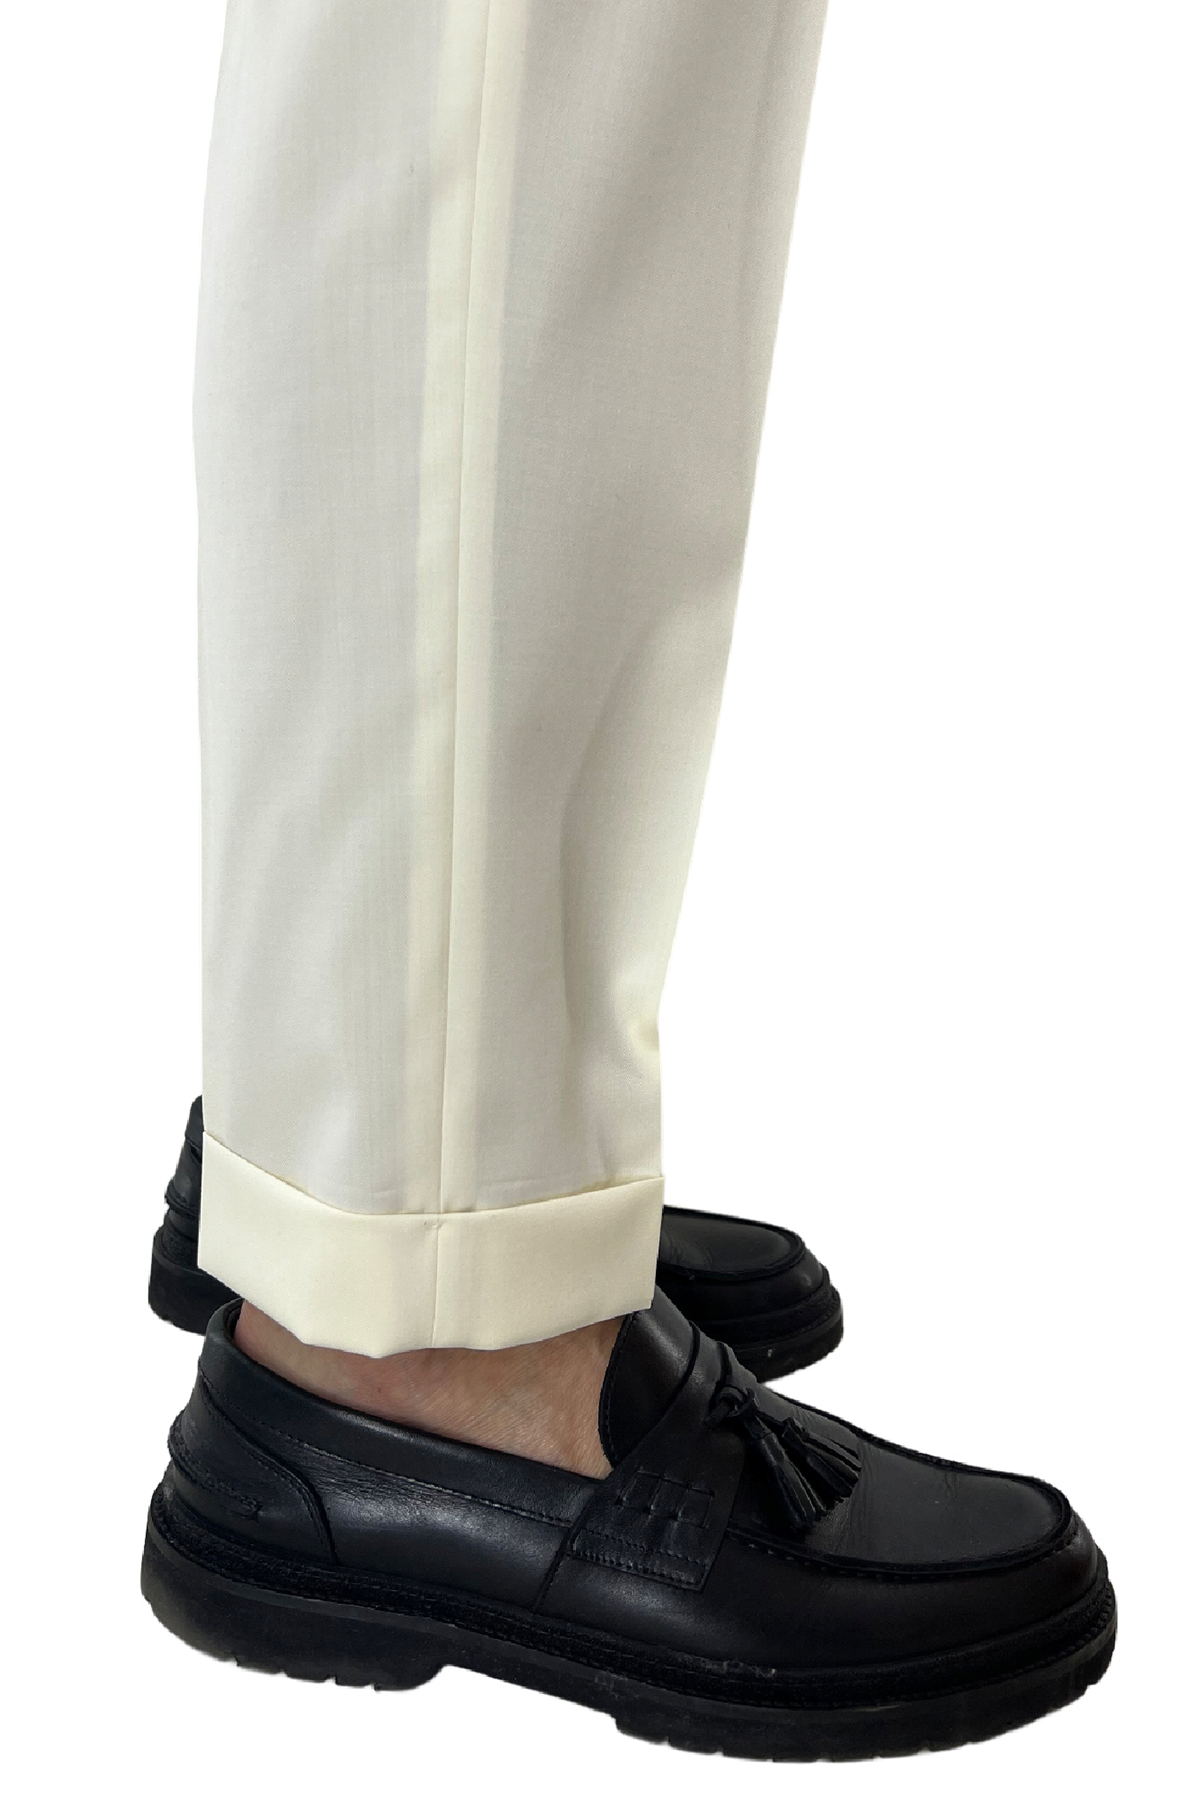 Pantalone uomo bianco vita alta tasca america in fresco lana 100% Vitale Barberis Canonico fibbie laterali e risvolto 4cm